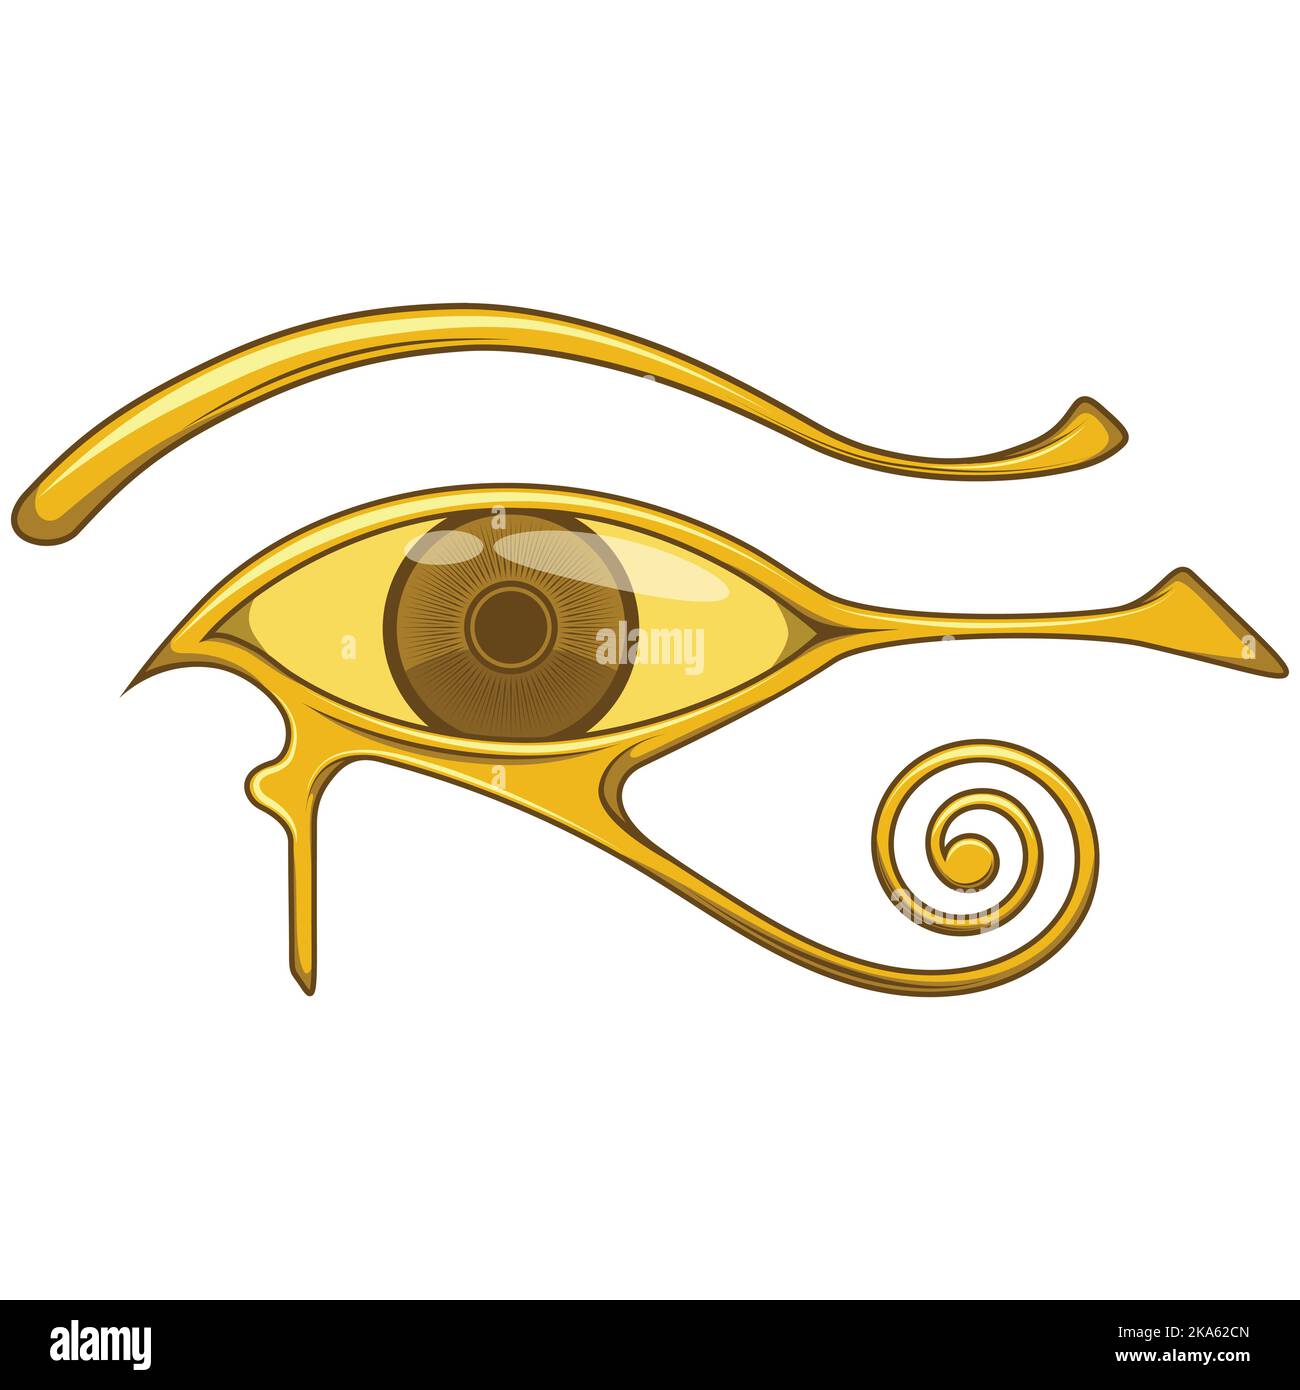 Occhio di horus, simbolo e amuleto di protezione originario dell'antico egitto, il simbolo proviene dal dio egiziano Horus, in colore oro Illustrazione Vettoriale